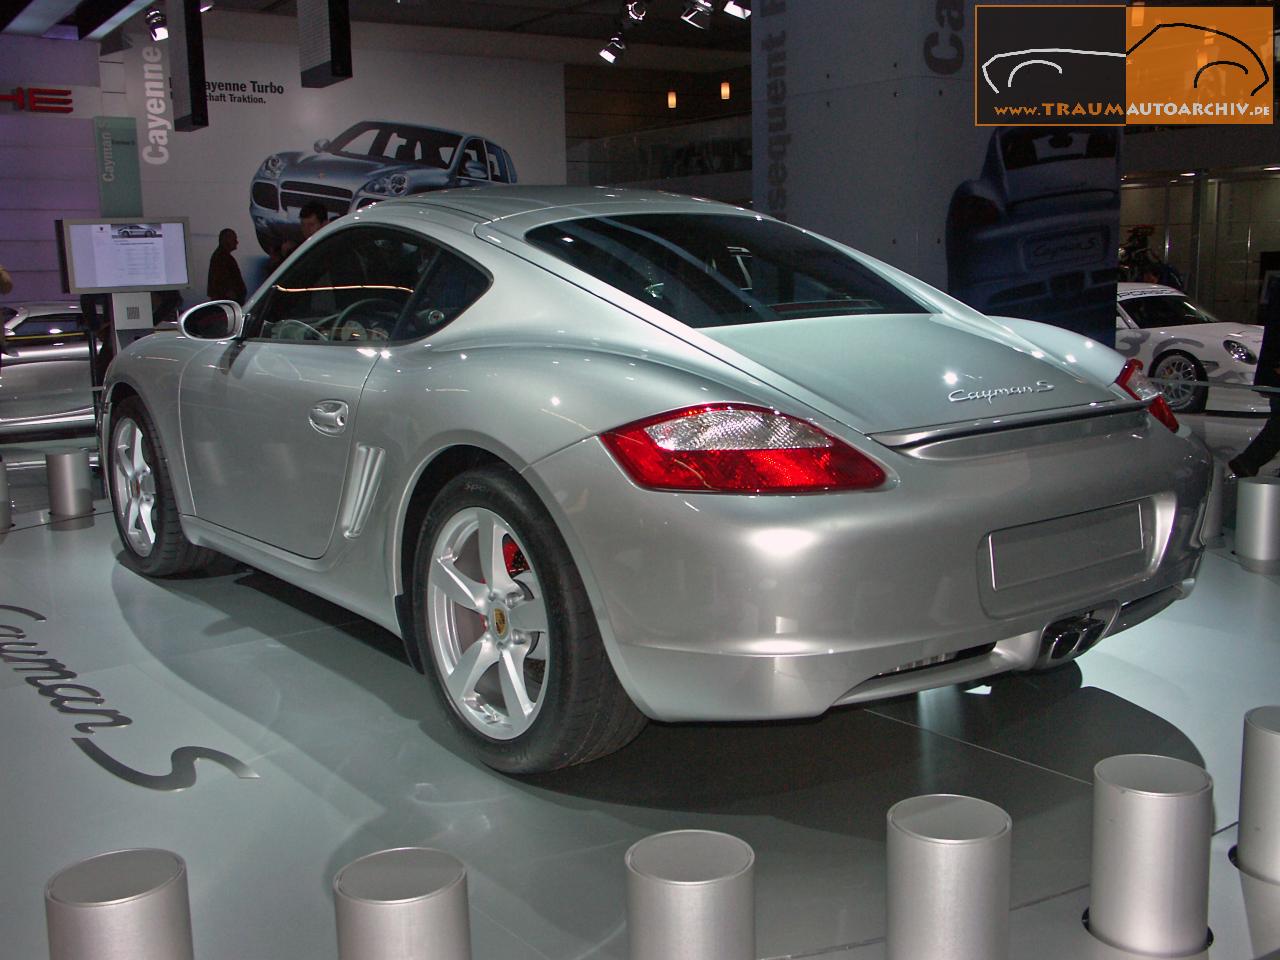 05 - Porsche Cayman S '2005.jpg 131.4K